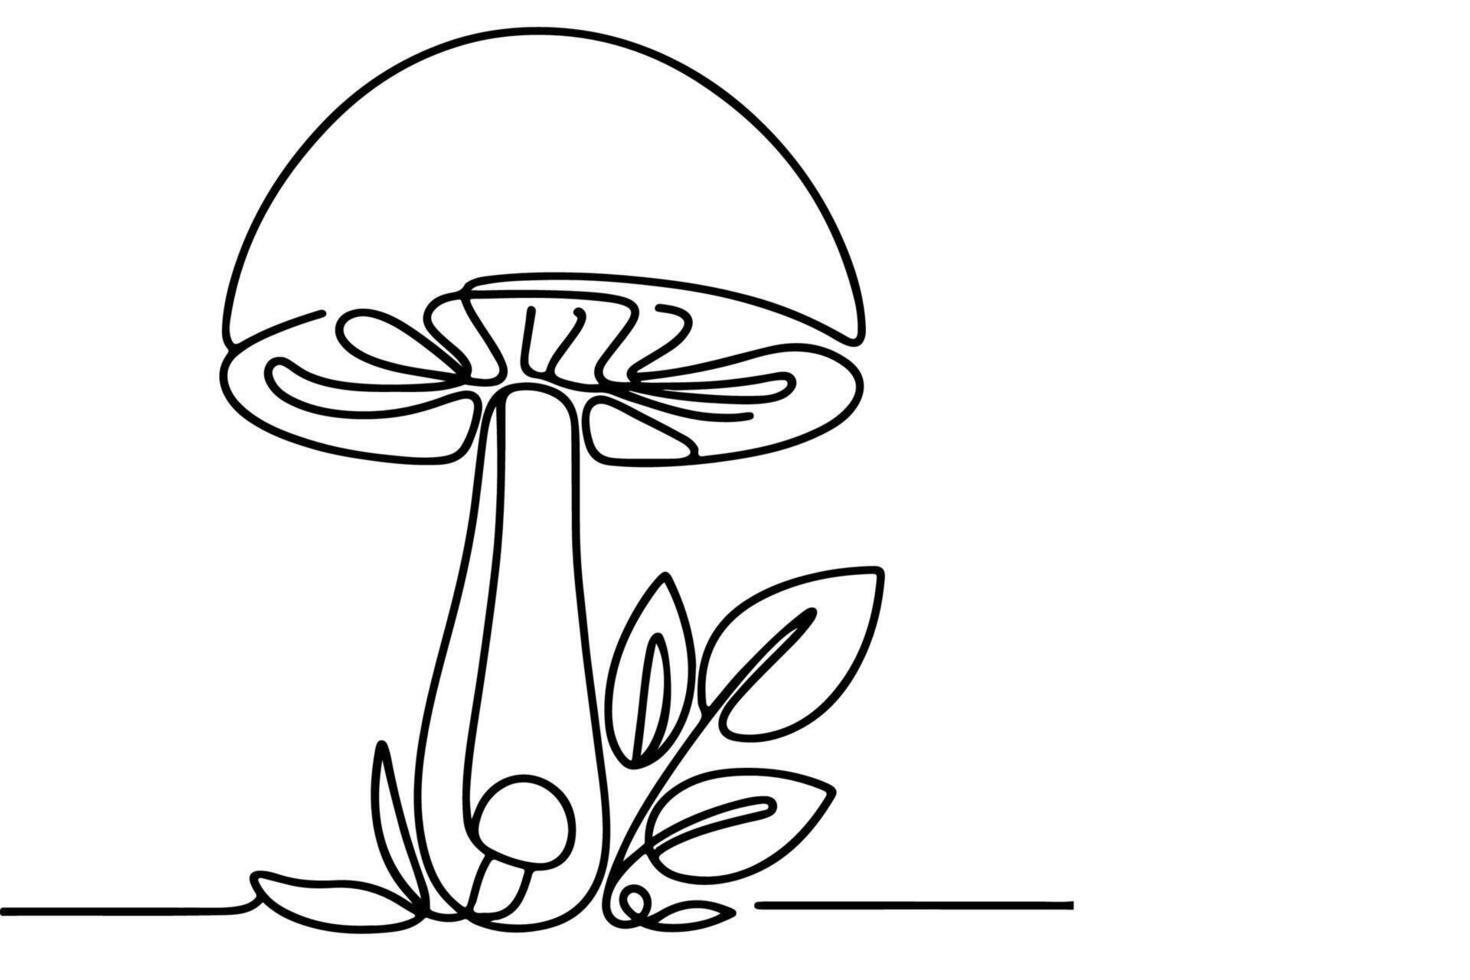 ai gerado contínuo 1 Preto linha desenhando cogumelo esboço rabisco vetor ilustração